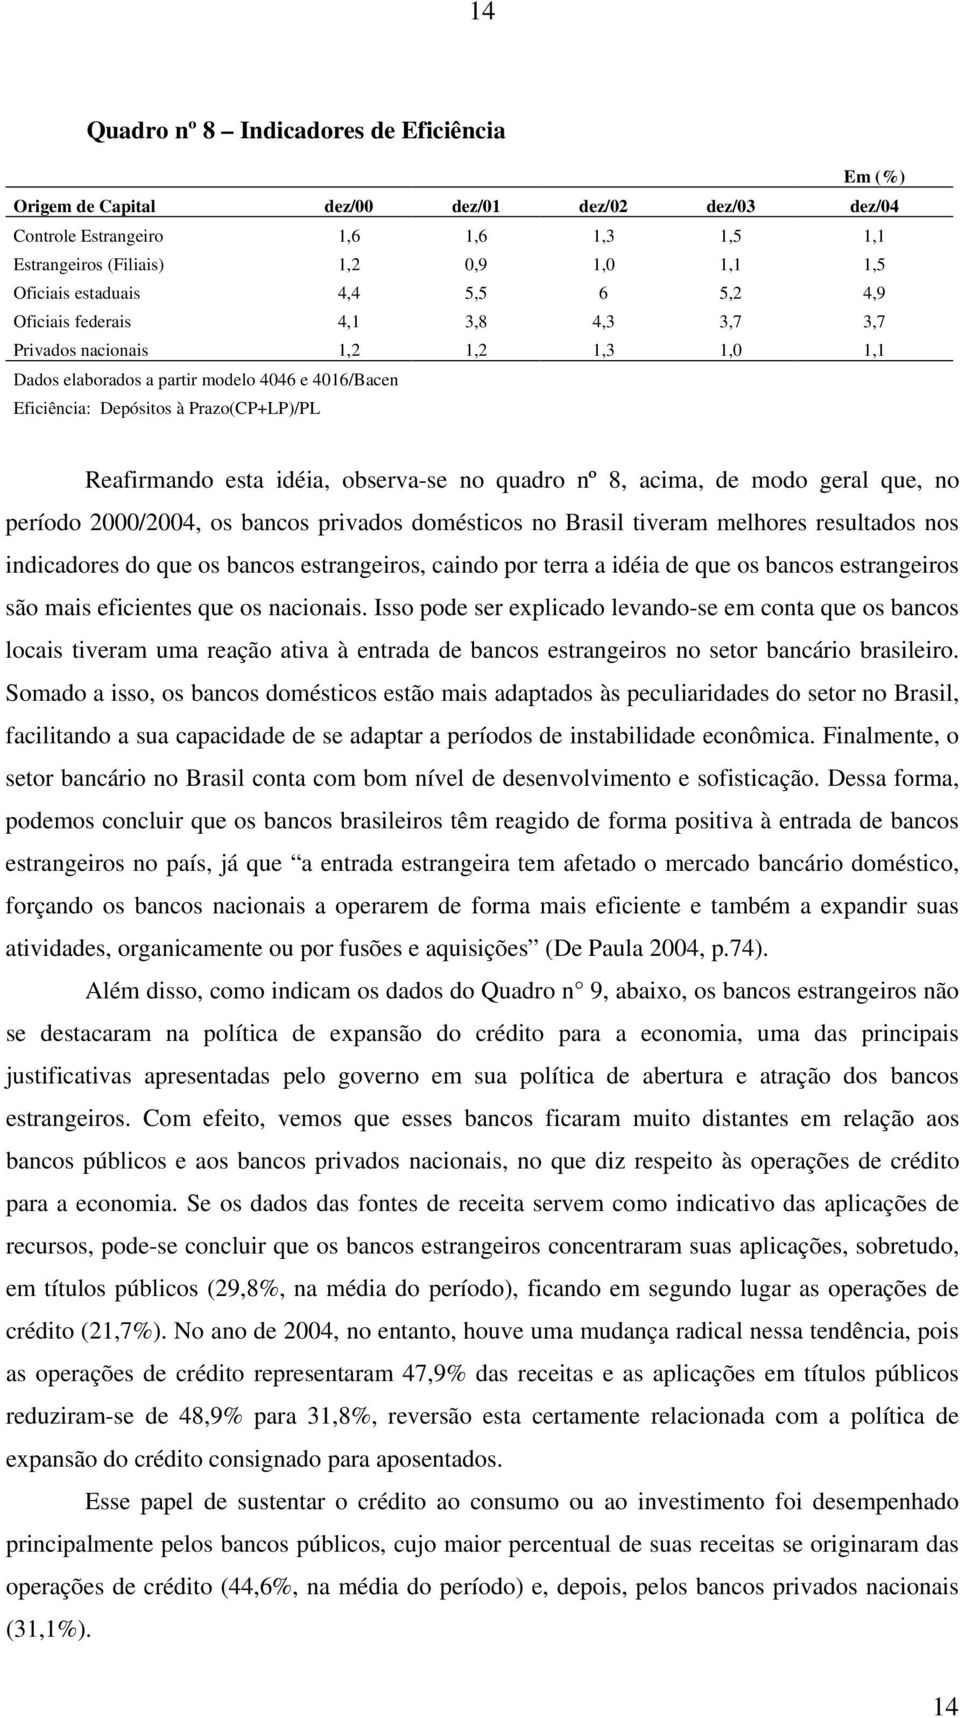 Reafirmando esta idéia, observa-se no quadro nº 8, acima, de modo geral que, no período 2000/2004, os bancos privados domésticos no Brasil tiveram melhores resultados nos indicadores do que os bancos